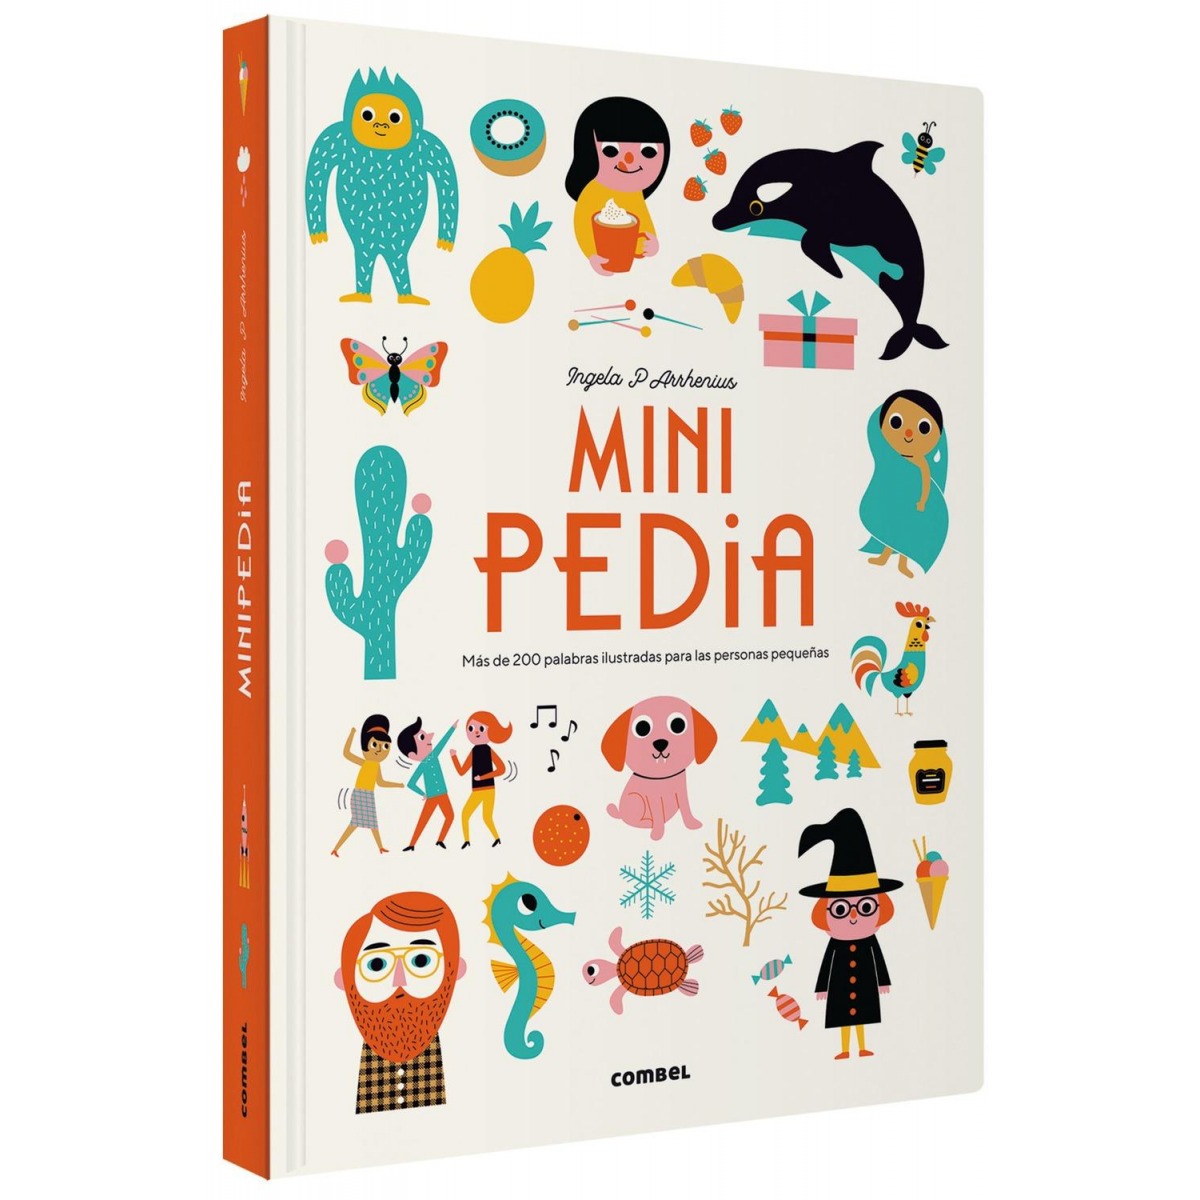 Minipedia, diccionario infantil de Combel